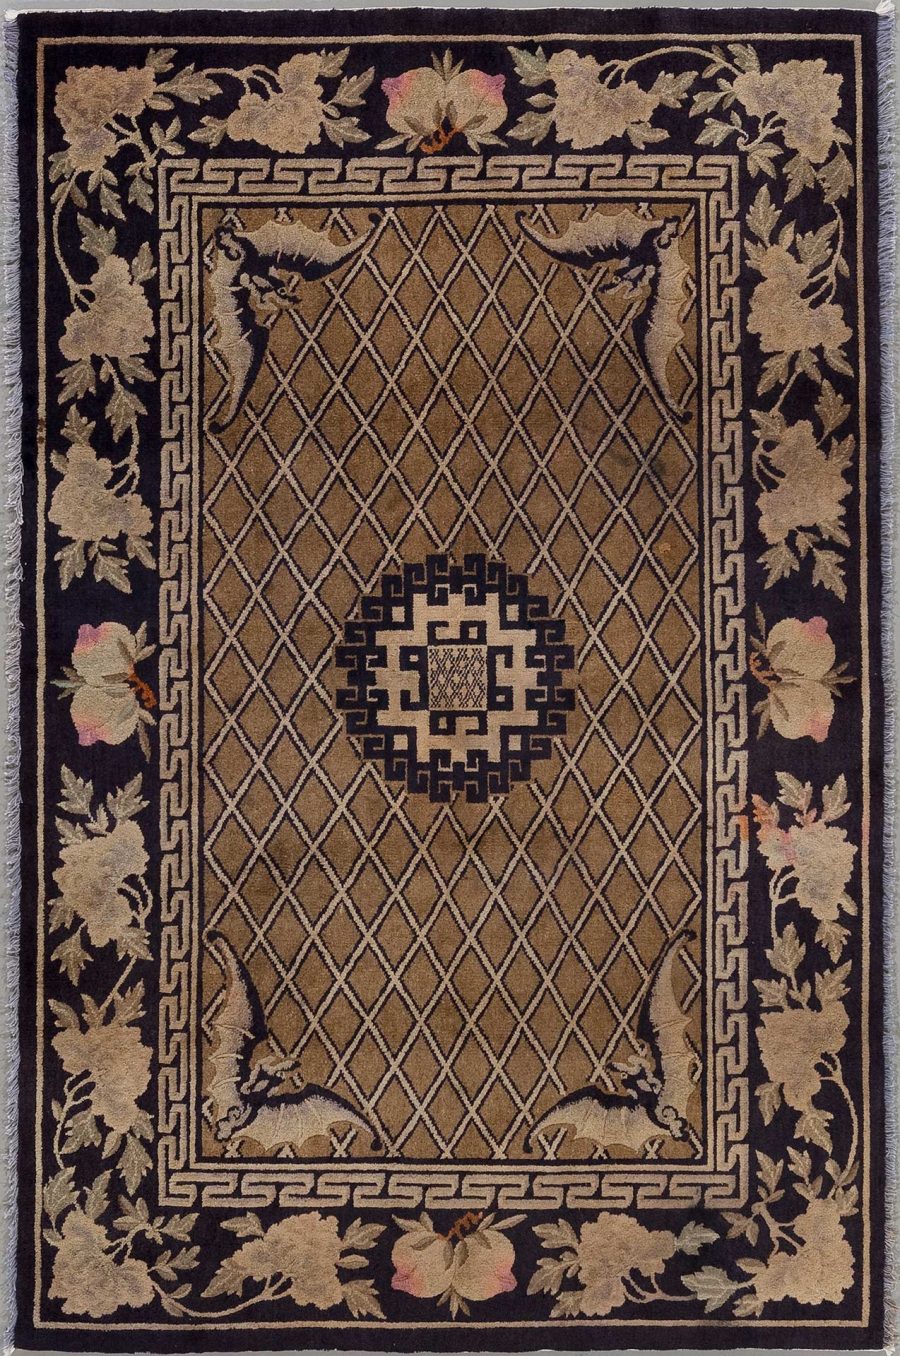 Traditioneller Teppich mit komplexem Muster bestehend aus einem zentralen geometrischen Design in einem Gittermuster, umgeben von einer Bordüre mit floralen und meanderartigen Motiven in Farben, die von Beige und Rosa über Braun bis hin zu Schwarz reichen.